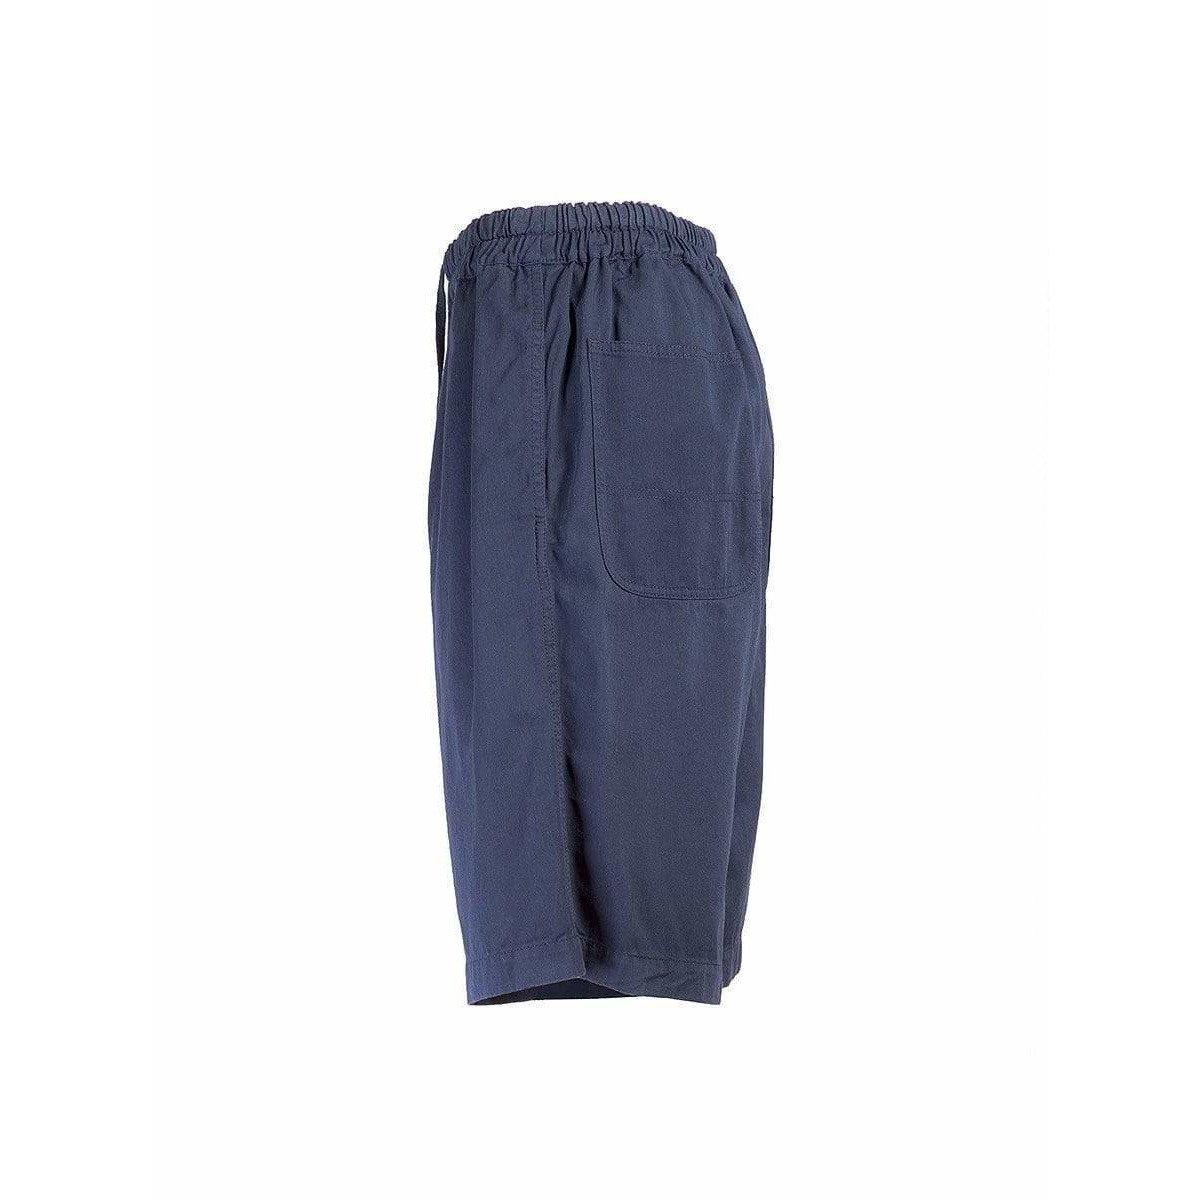 Diese indigoblauen Shorts bieten alle Annehmlichkeiten: längere Länge, Baumwolle, elastischer Bund, Kordelzug und zwei übergroße Gesäßtaschen. Was will man mehr von einem alten Comme des Garçons?